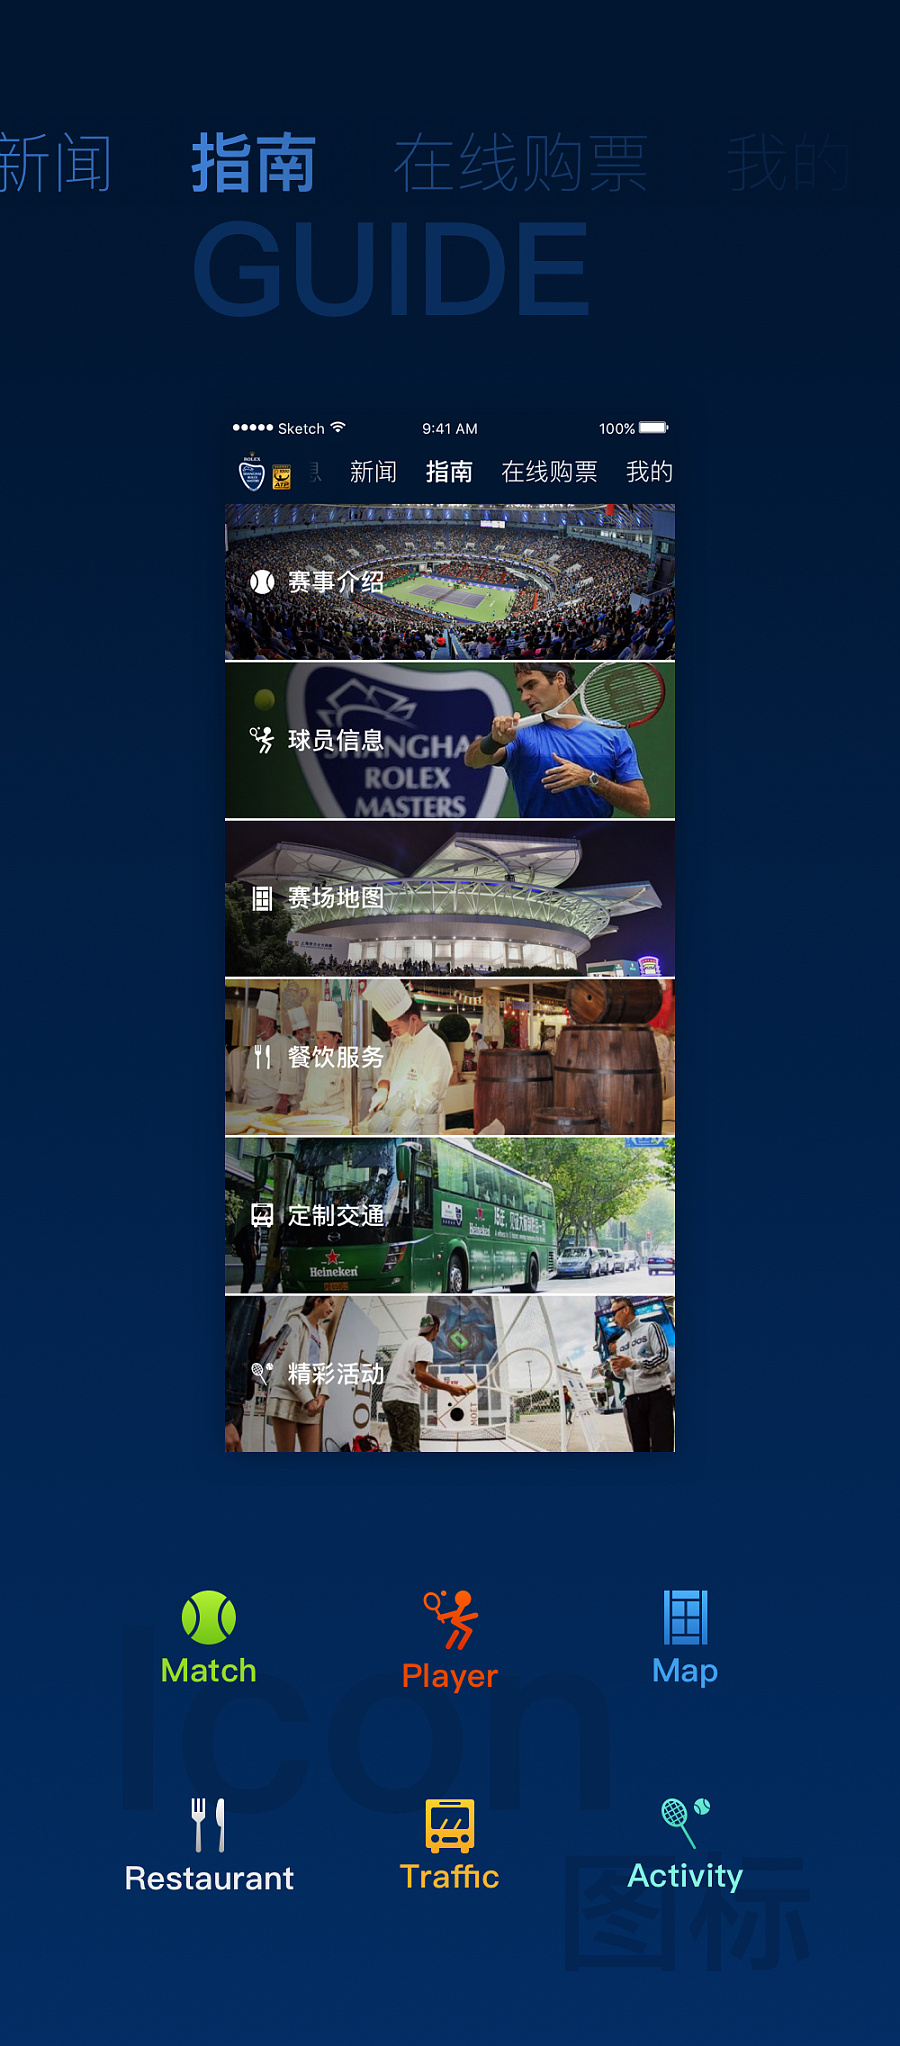 上海网球大师赛APP 体育资讯类 UI设计|移动设